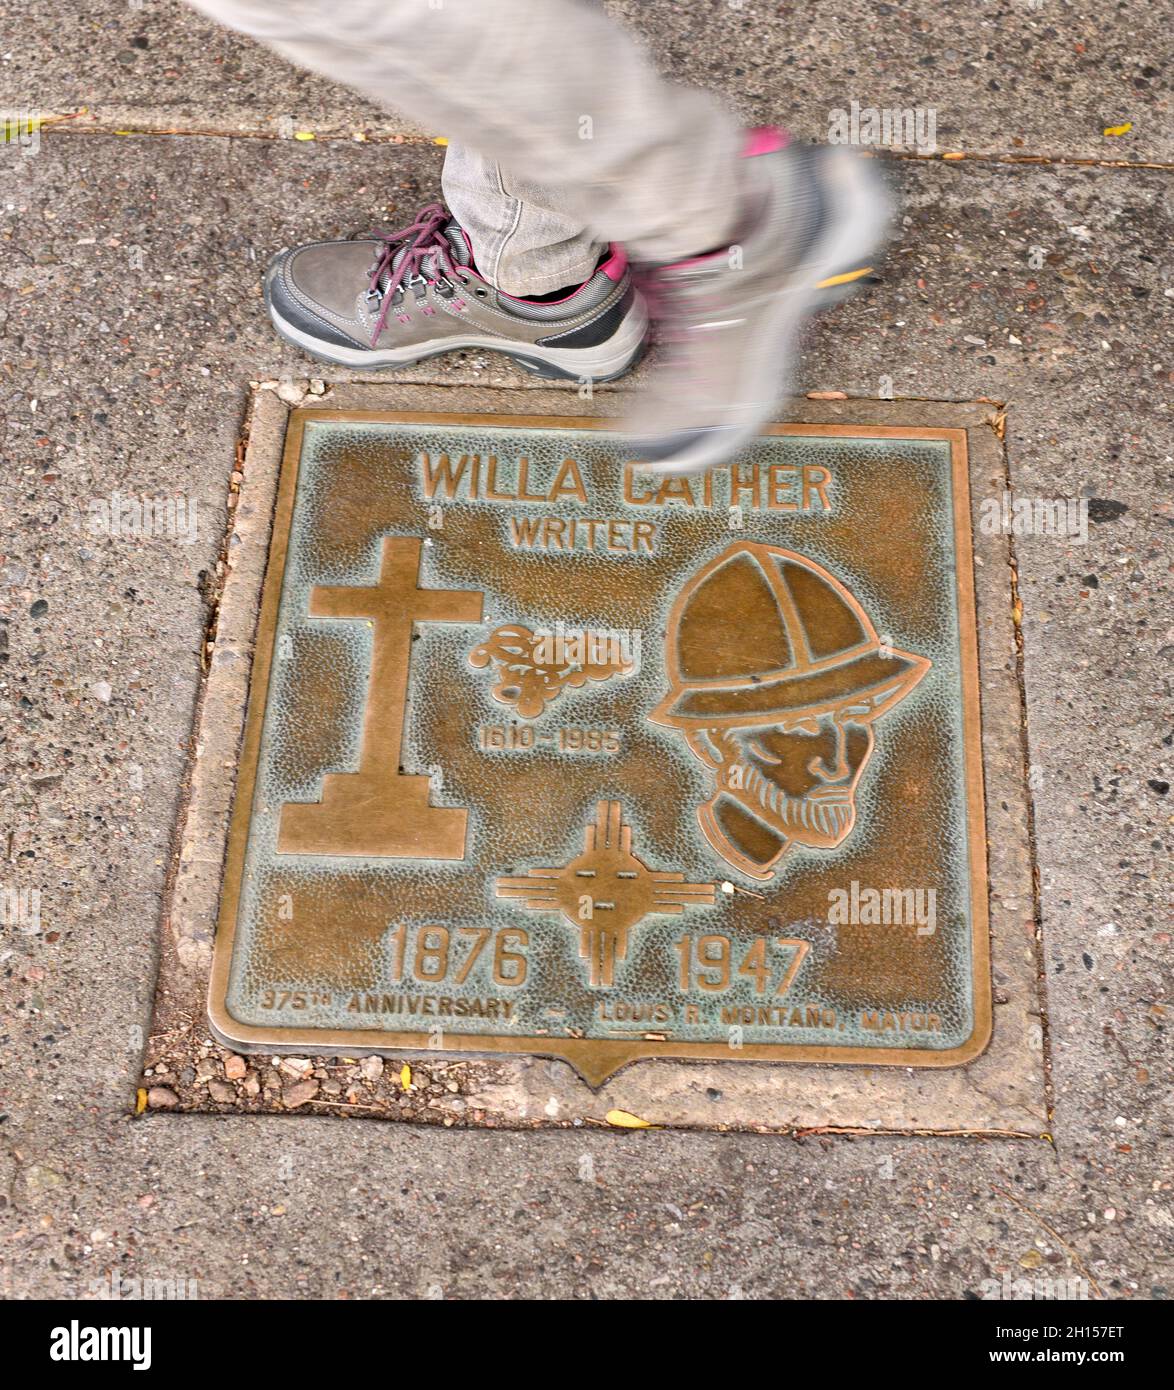 Un pennarello commemorativo in metallo in onore dello scrittore americano Willa Cather incorporato nel marciapiede di fronte al New Mexico Museum of Art di Santa Fe. Foto Stock